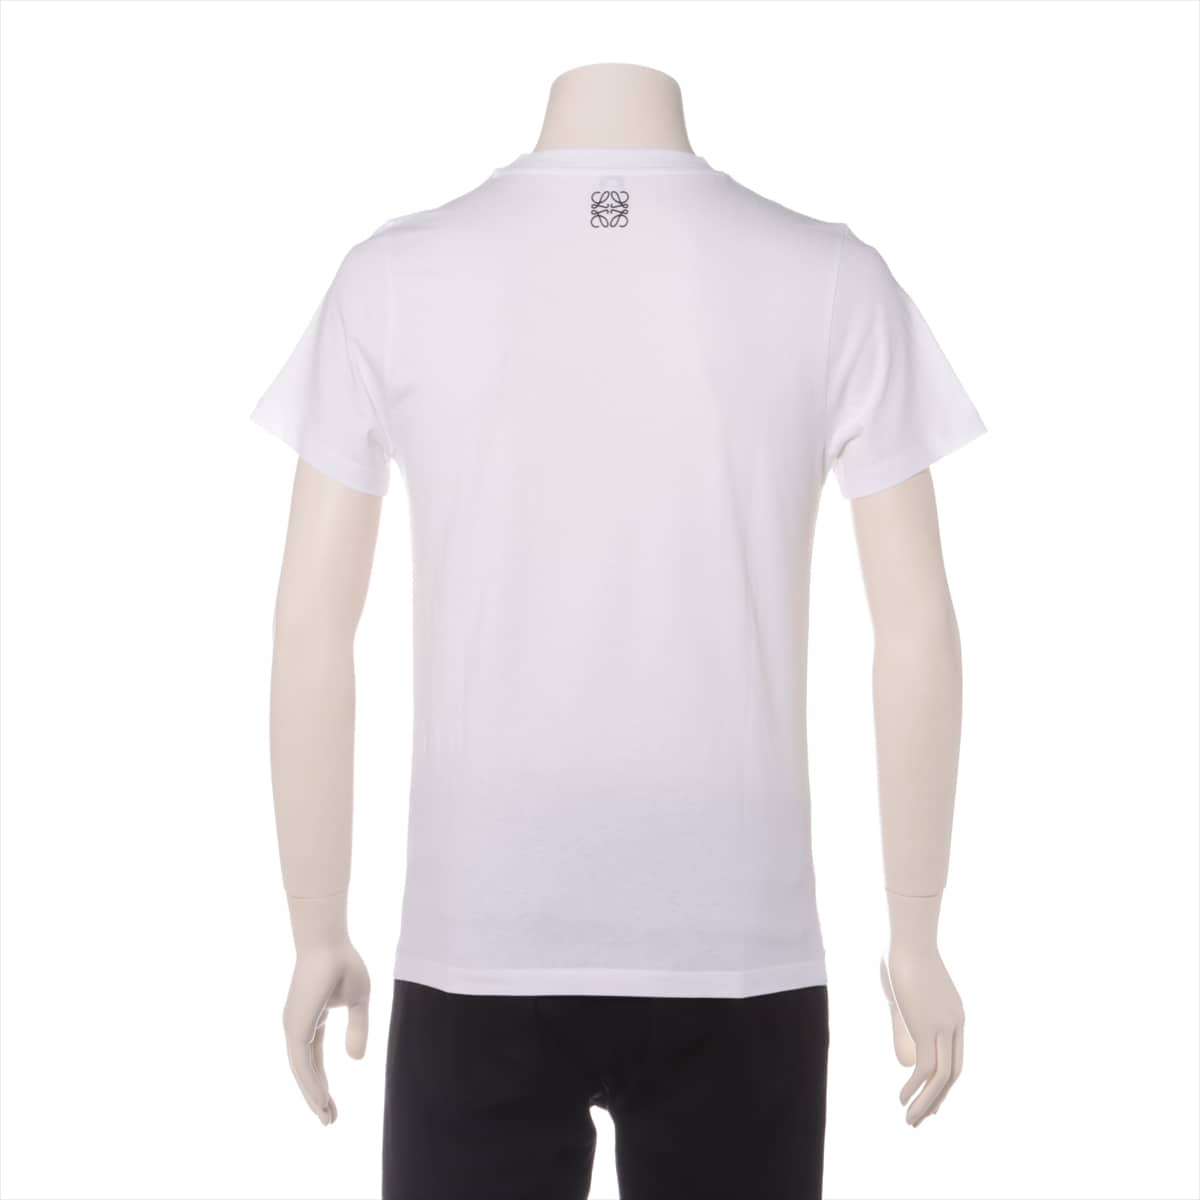 Loewe Cotton T-shirt XS Men's White